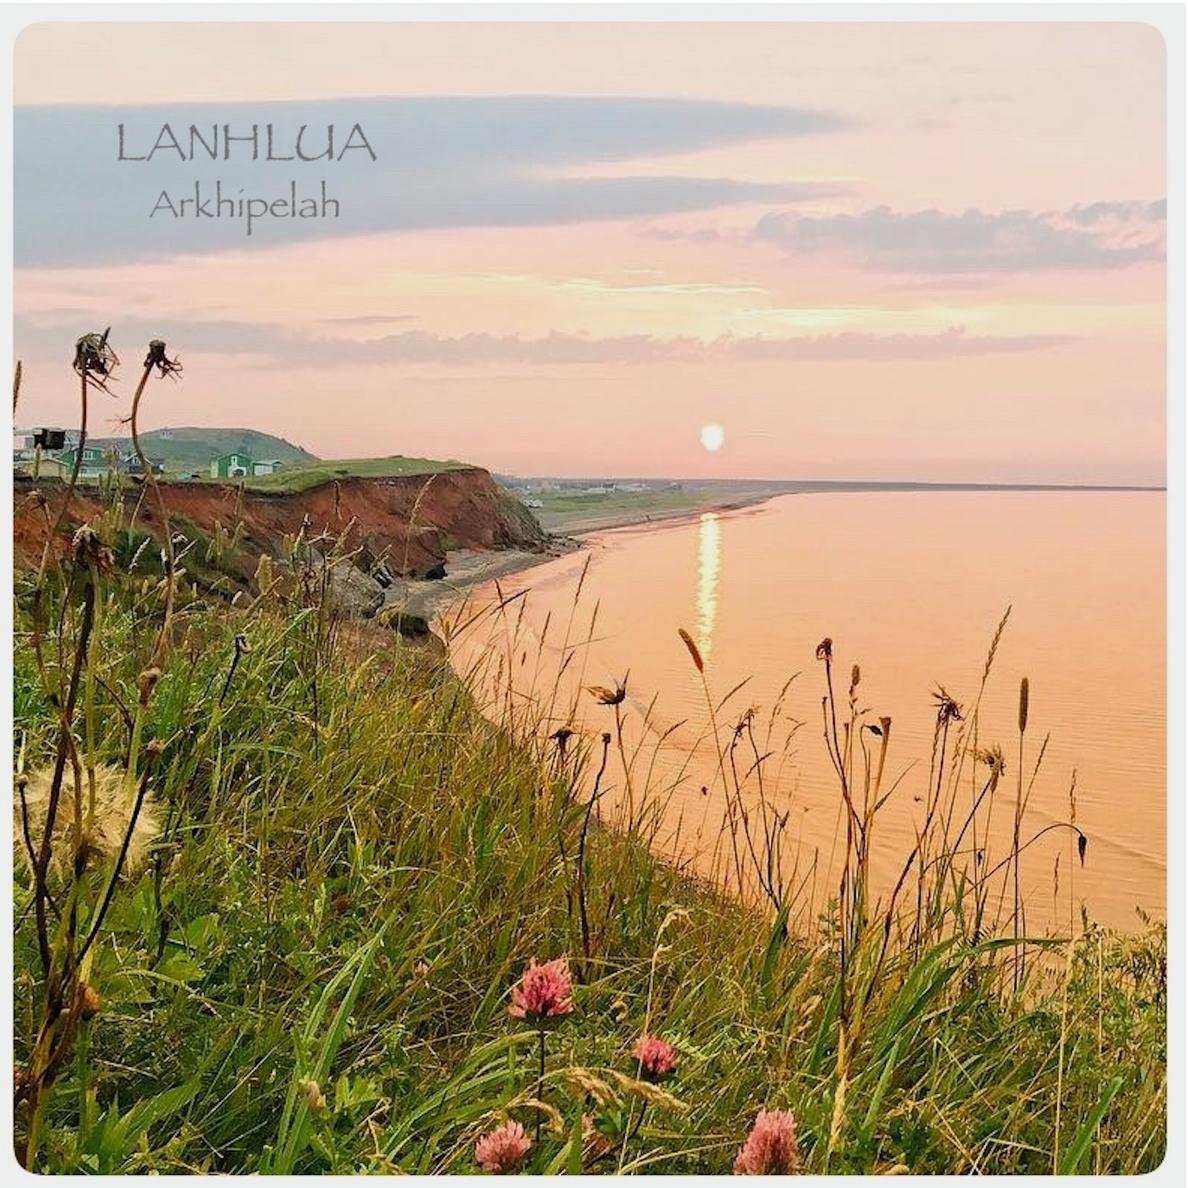 Lanhlua - The Cell